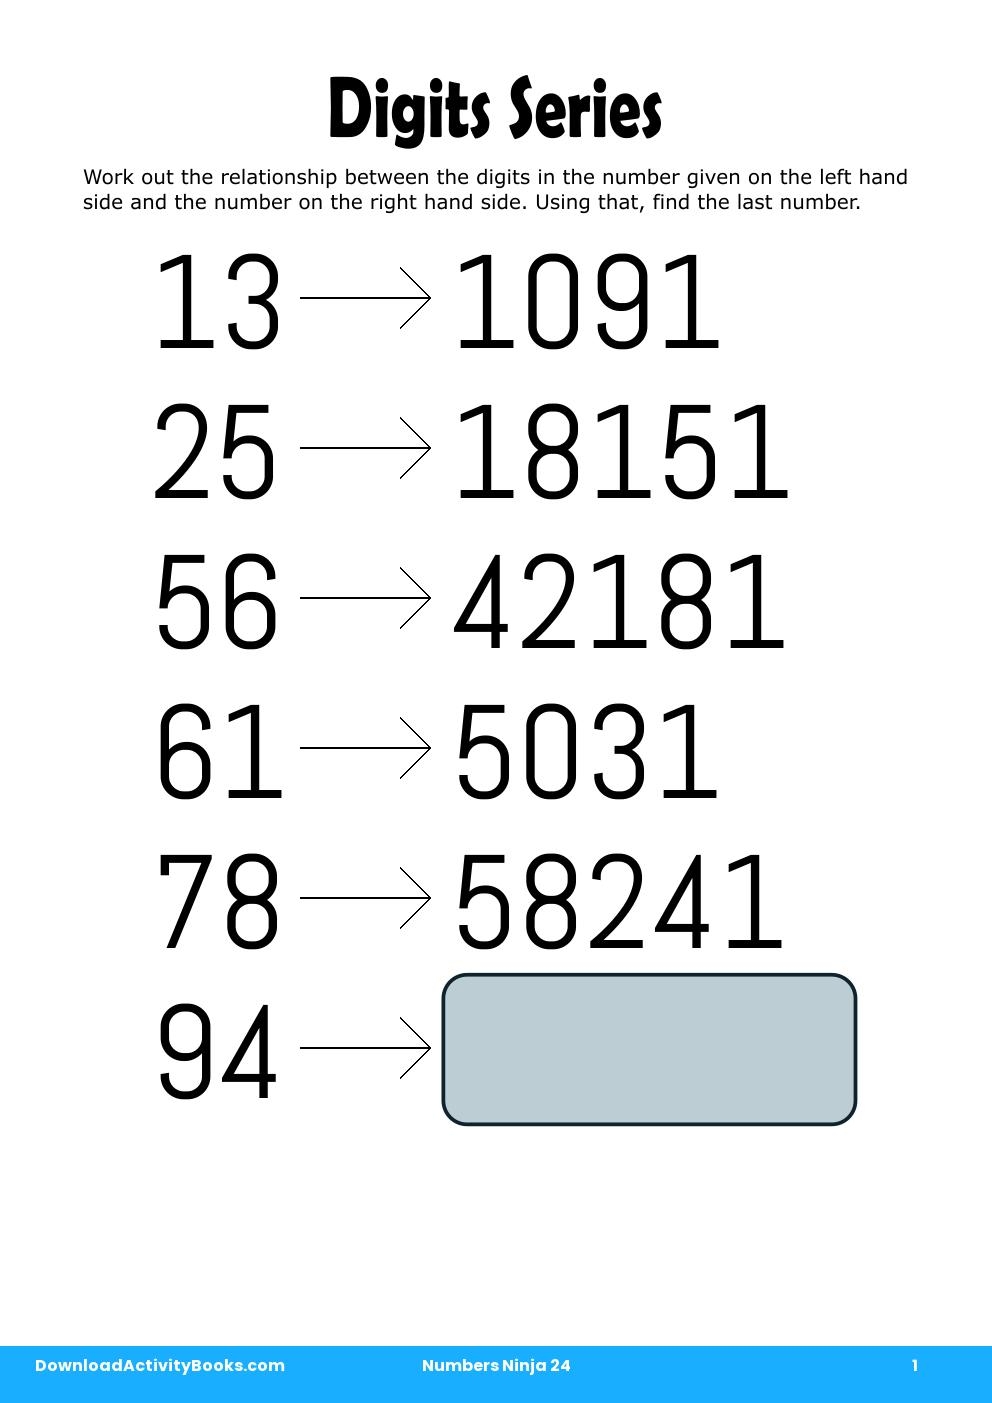 Digits Series in Numbers Ninja 24